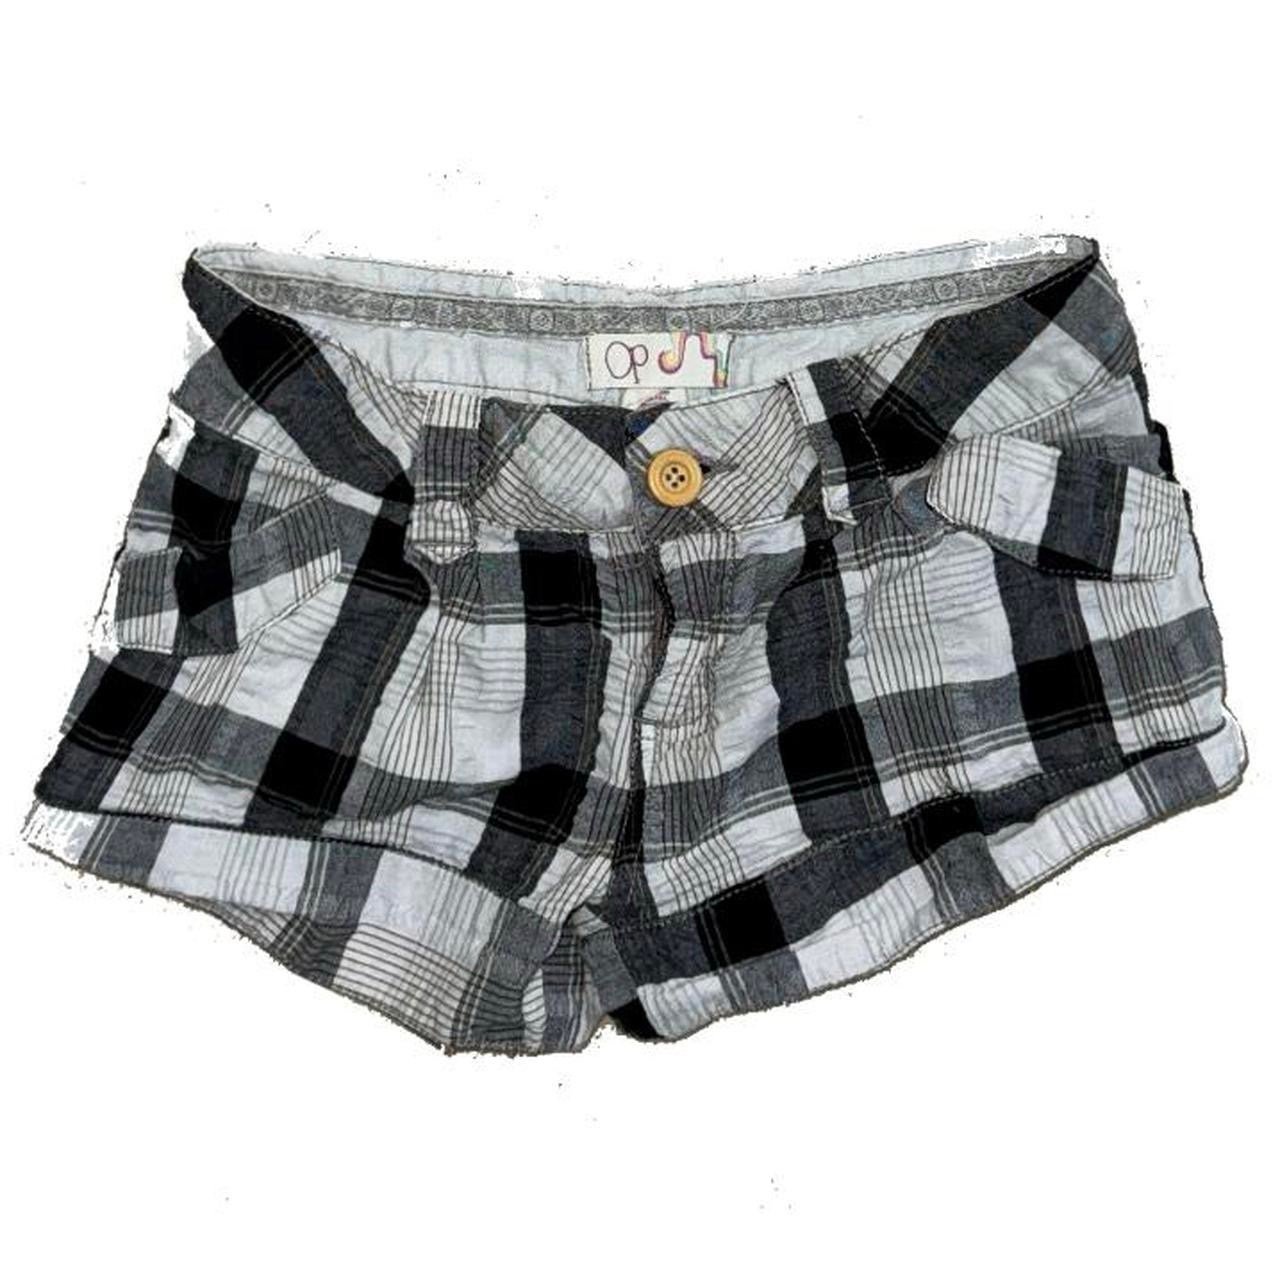 where to buy  Plaid black and gray mini shorts kWWtQg5qw no tax